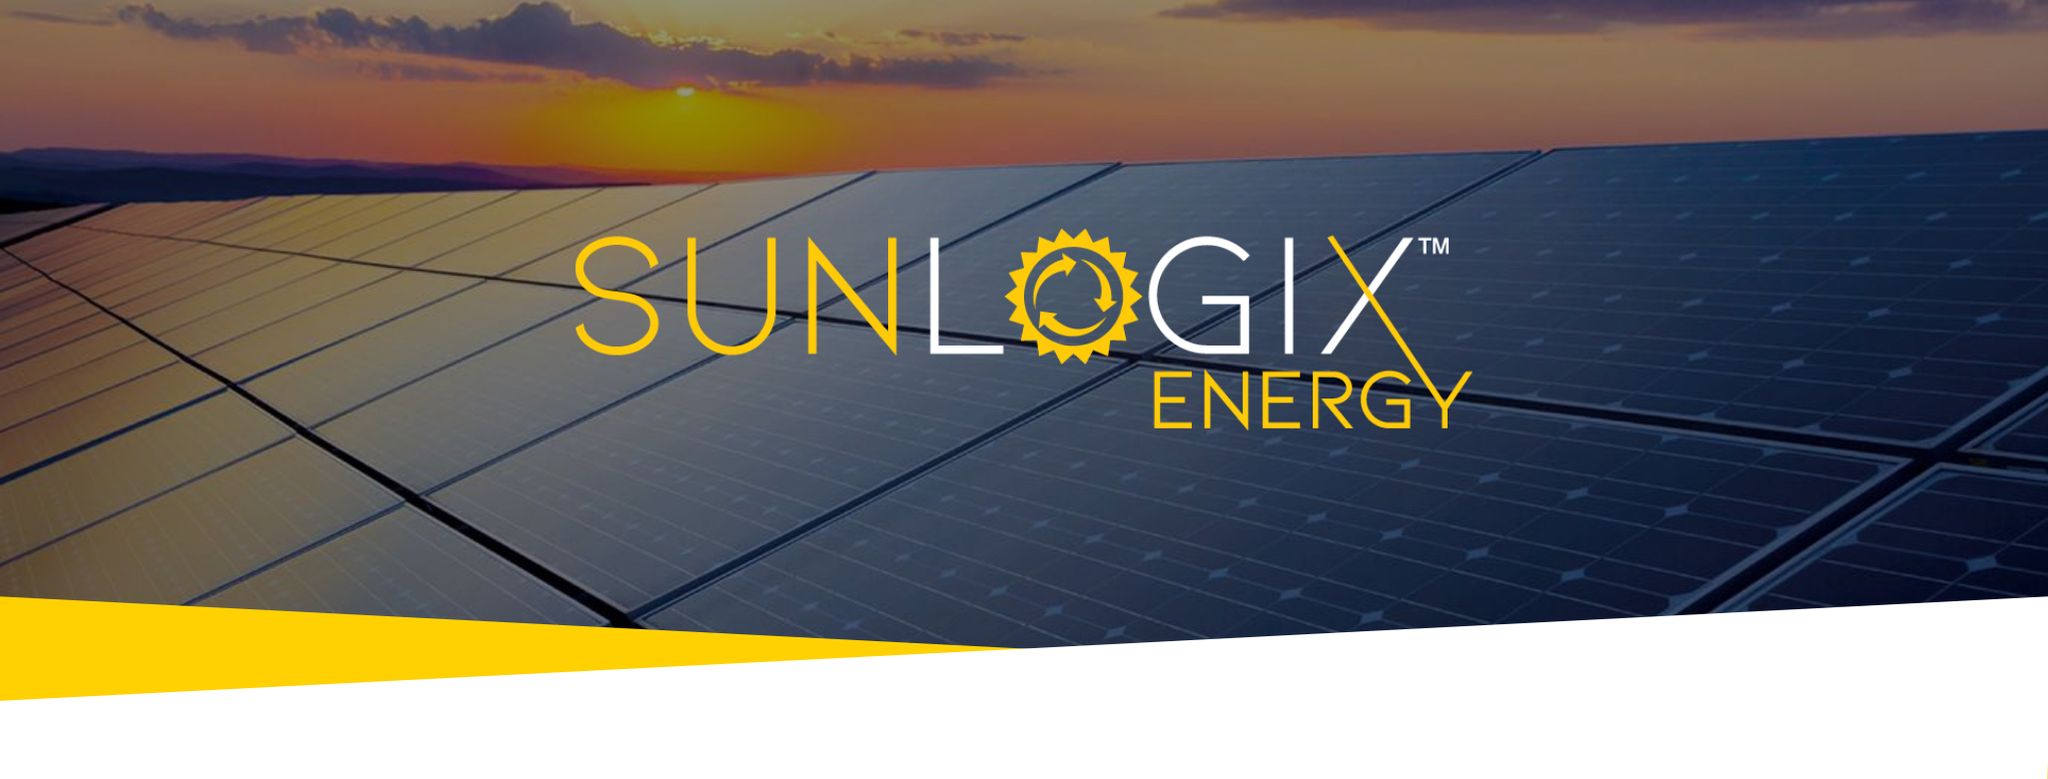 Sunlogix Energy featured image